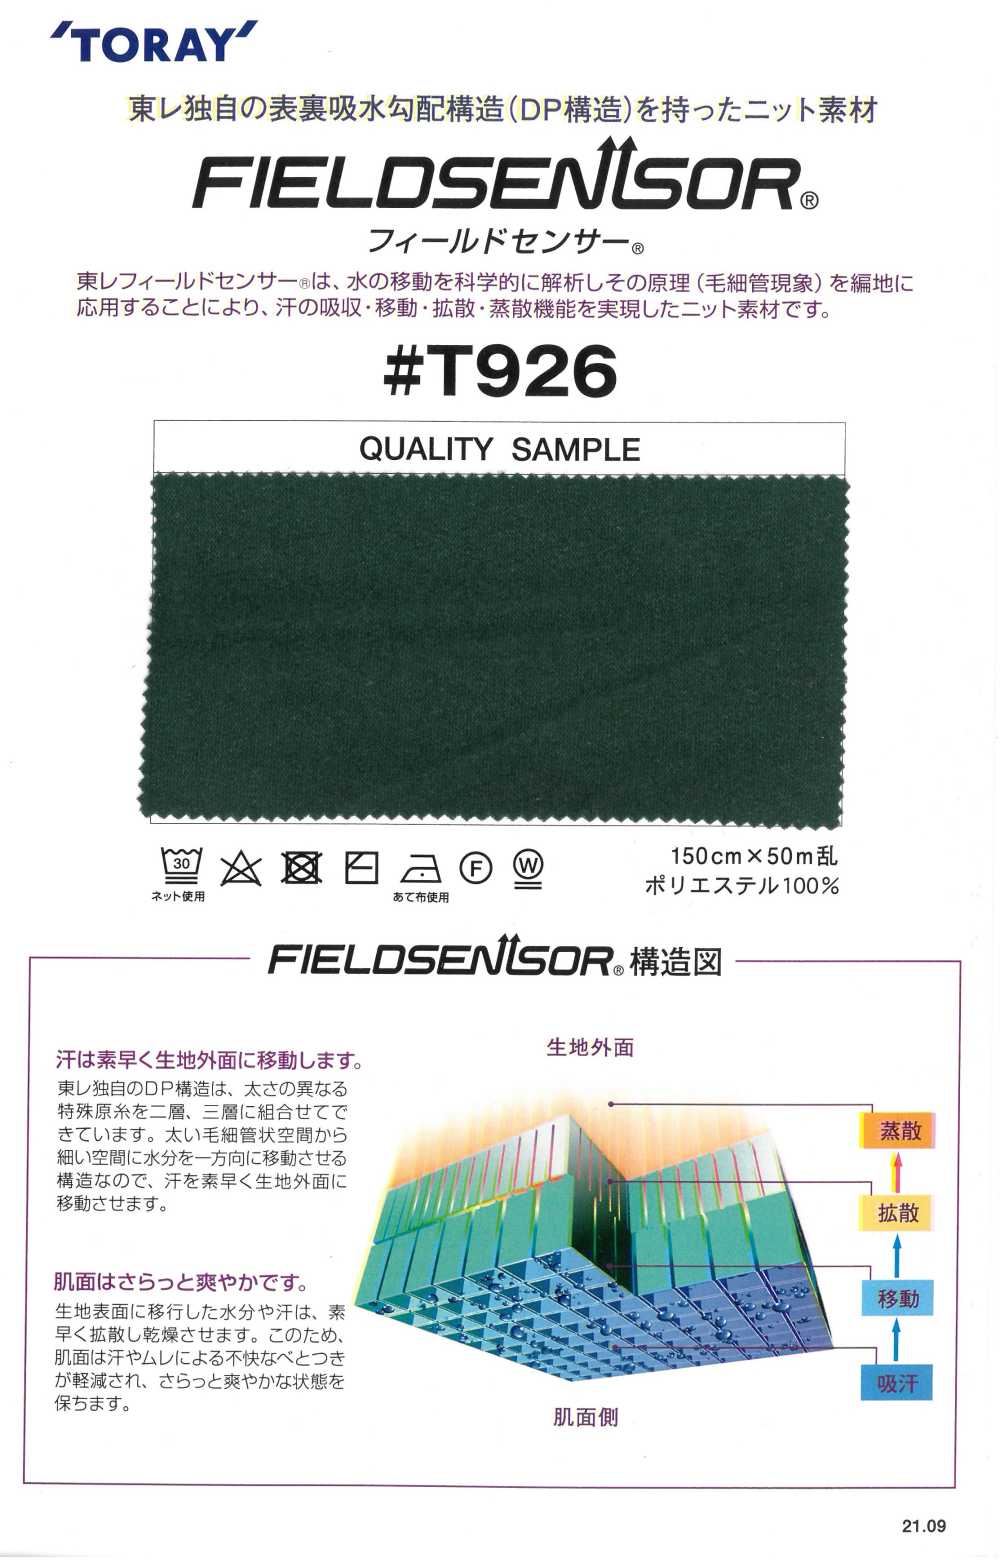 T926 Material De Malha TORAY Field Sensor® Para Roupas íntimas (Tipo Felpudo)[Têxtil / Tecido] Tamurakoma